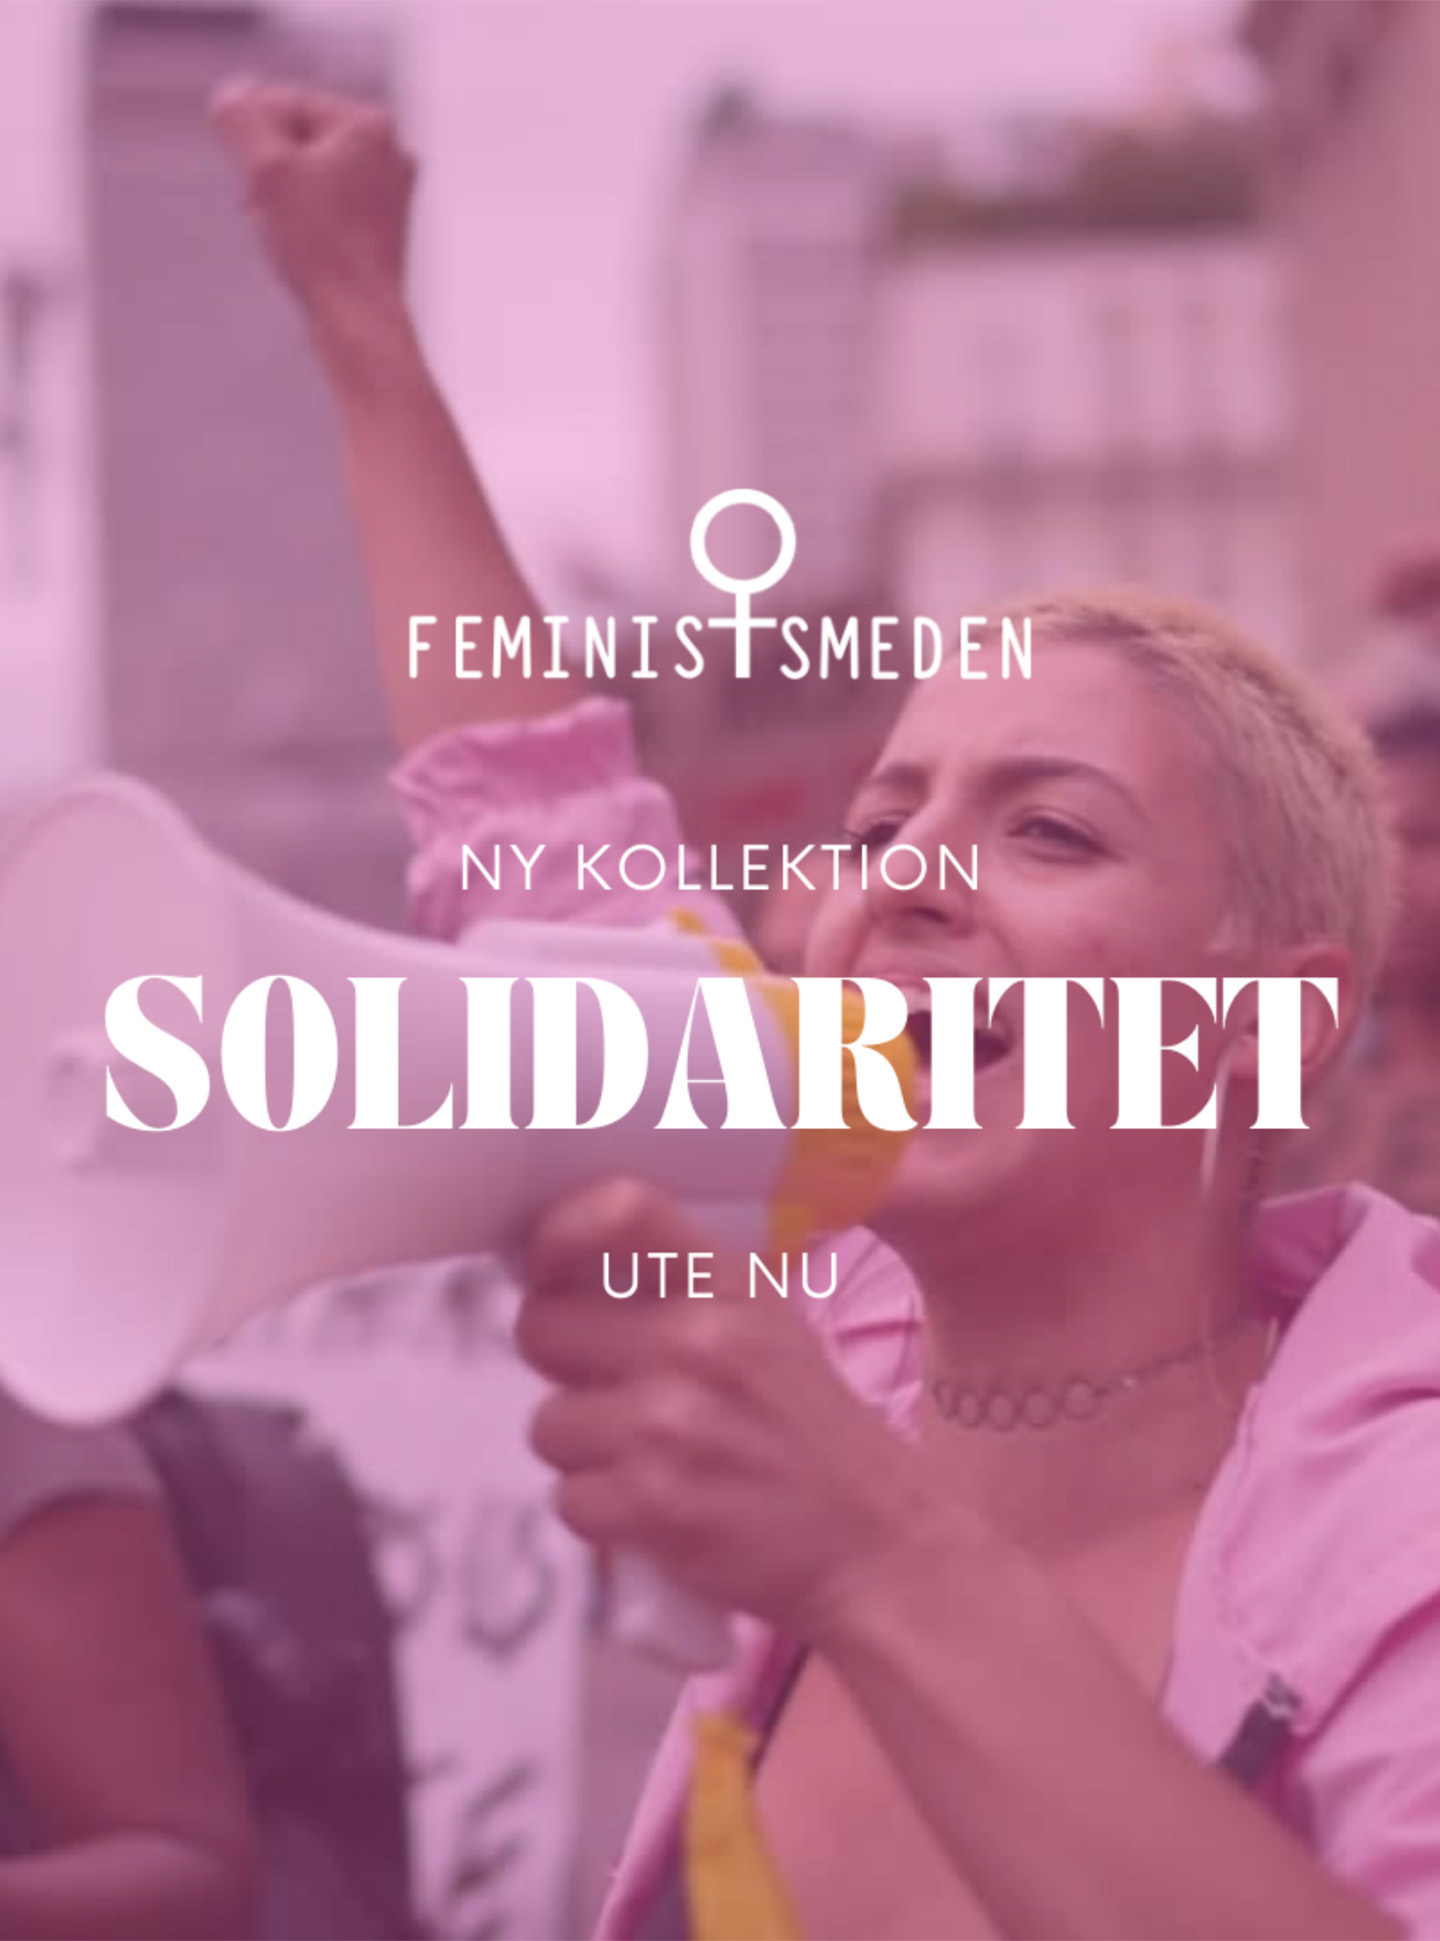 Ny kollektion Solidaritet av Feministsmeden